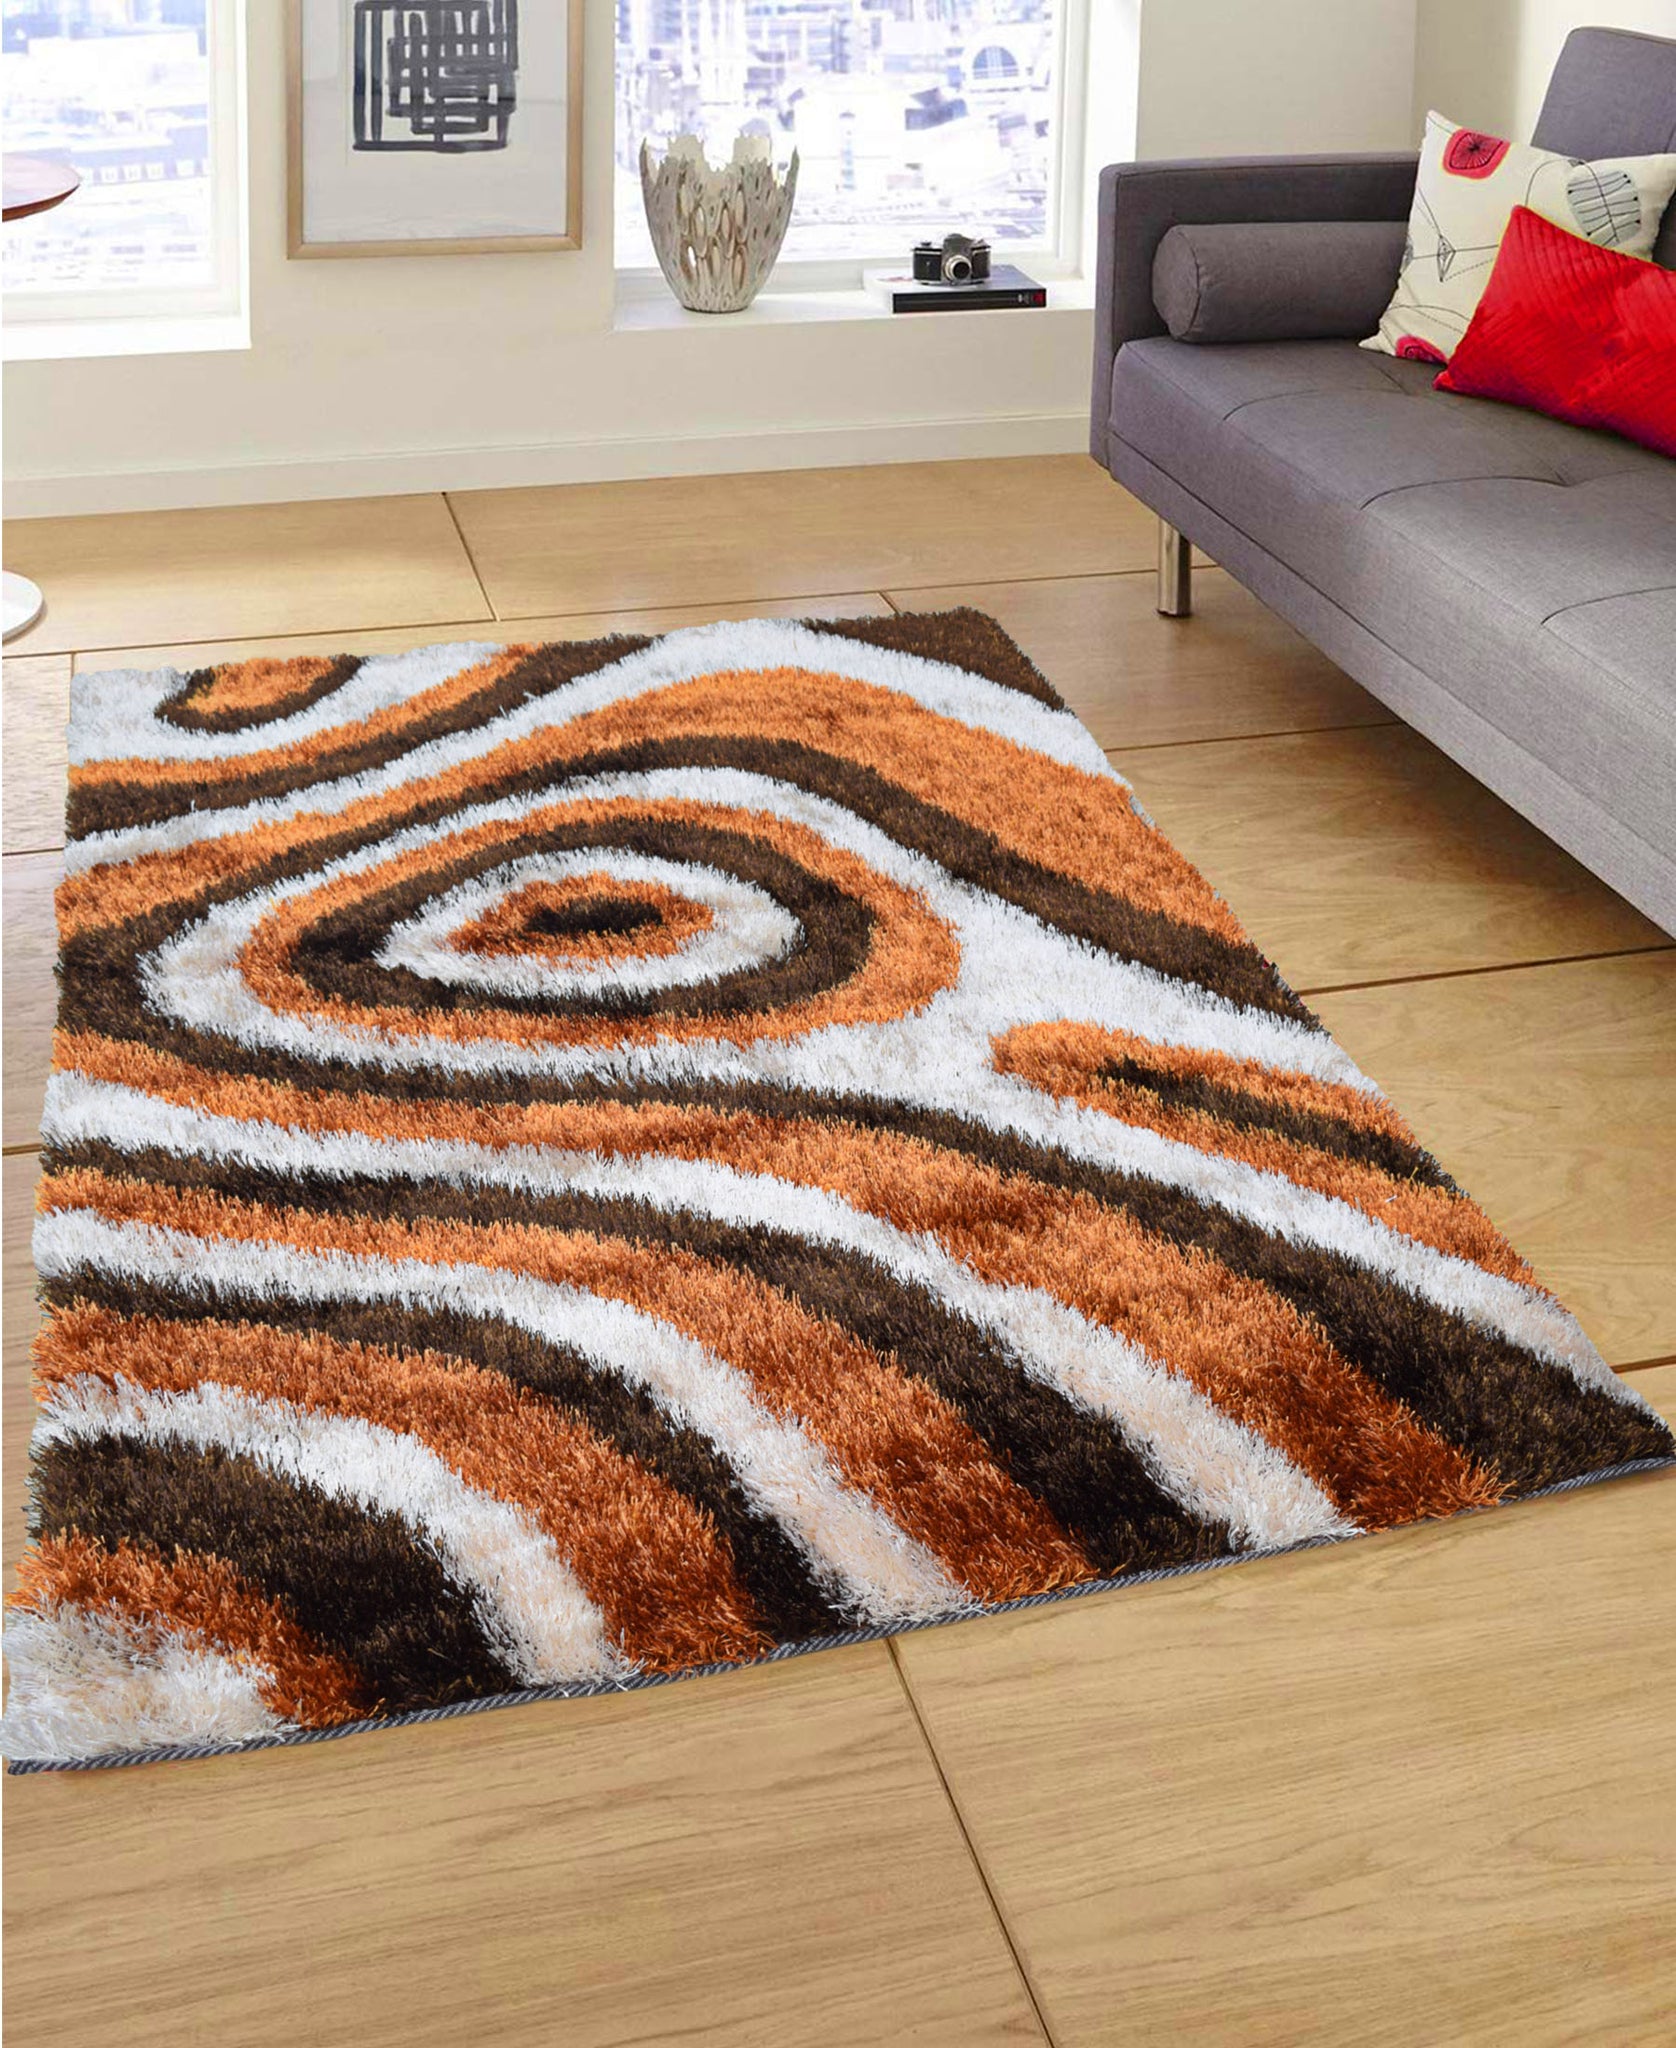 Shaggy Hollow Carpet 1200mm x 1600mm - Brown